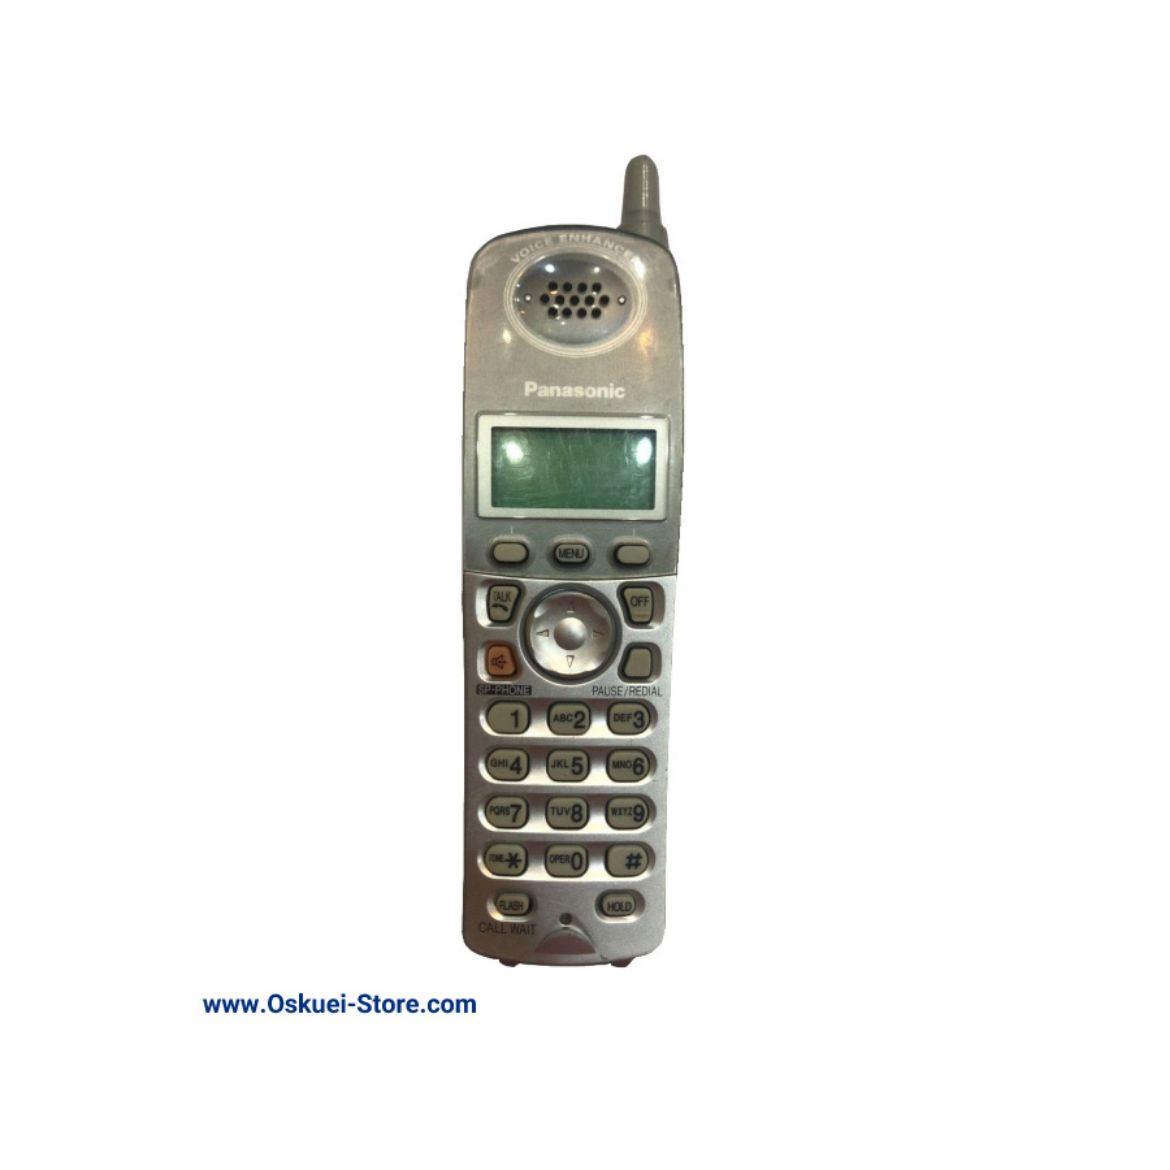 Panasonic KX-TGA561 Cordless Telephone